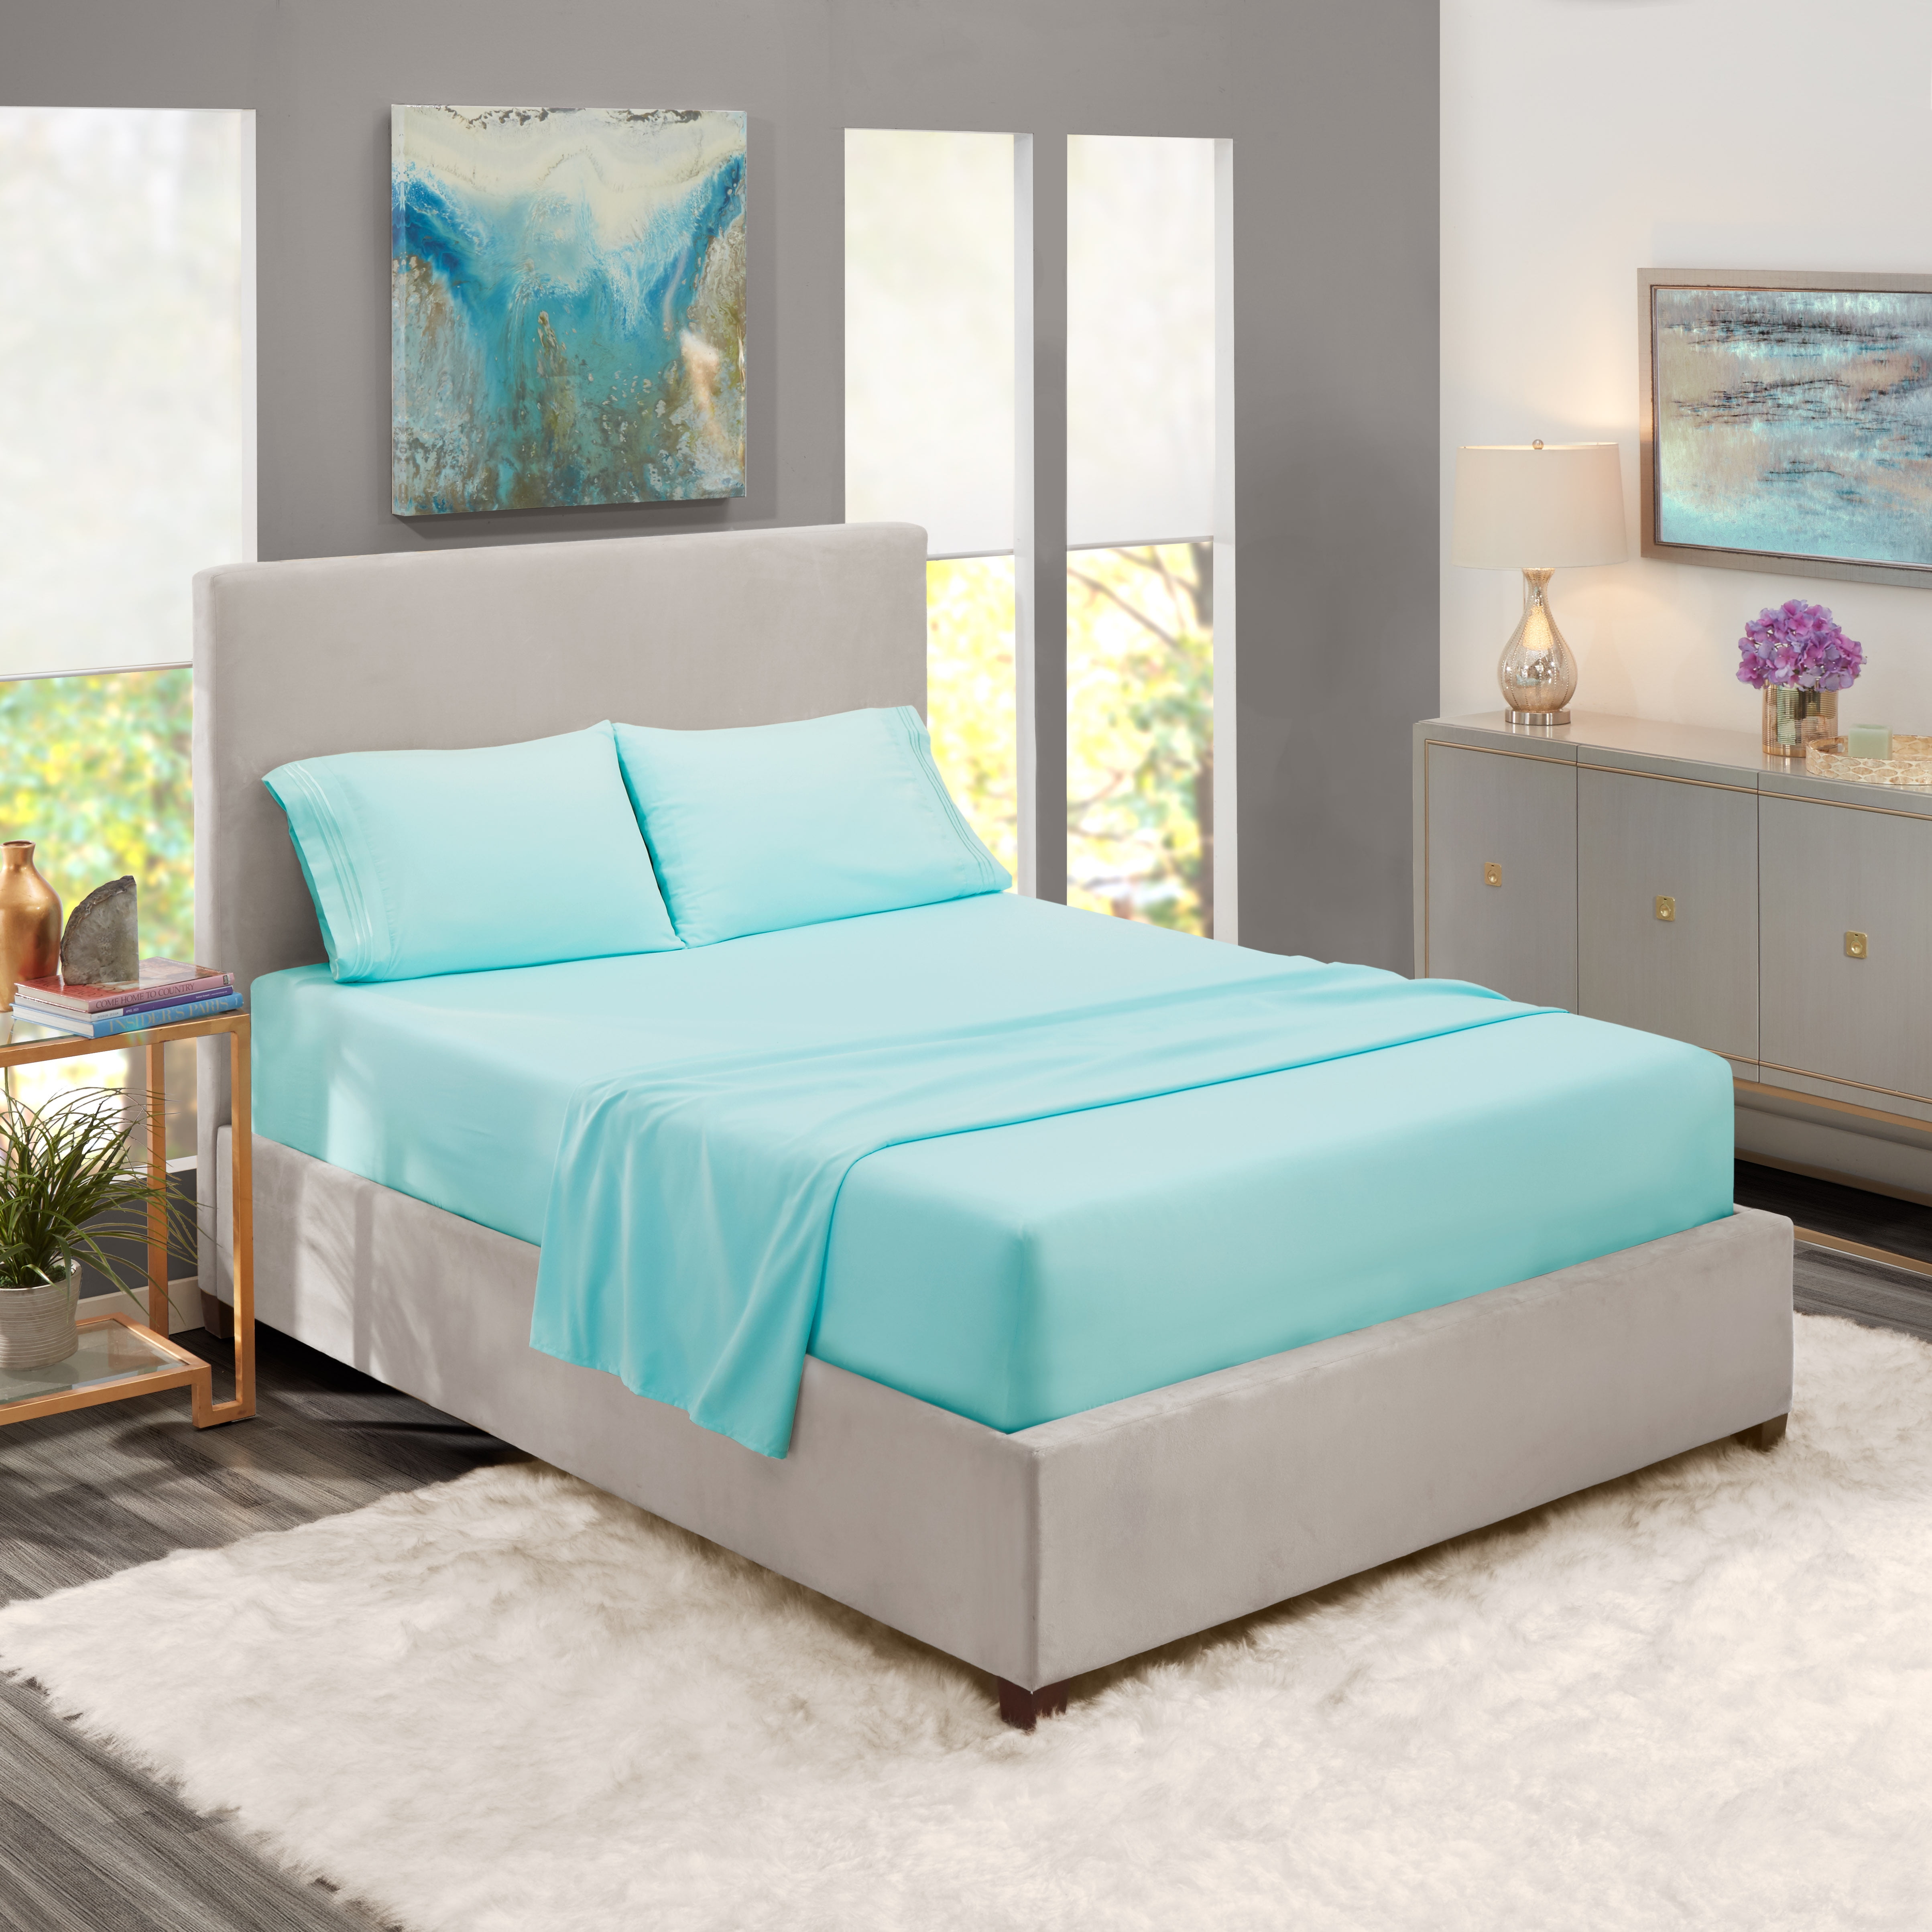 Premium Hotel Quality 4 Piece Bed Sheet Set 11 Designs Quatrafoil Queen Navy for sale online 